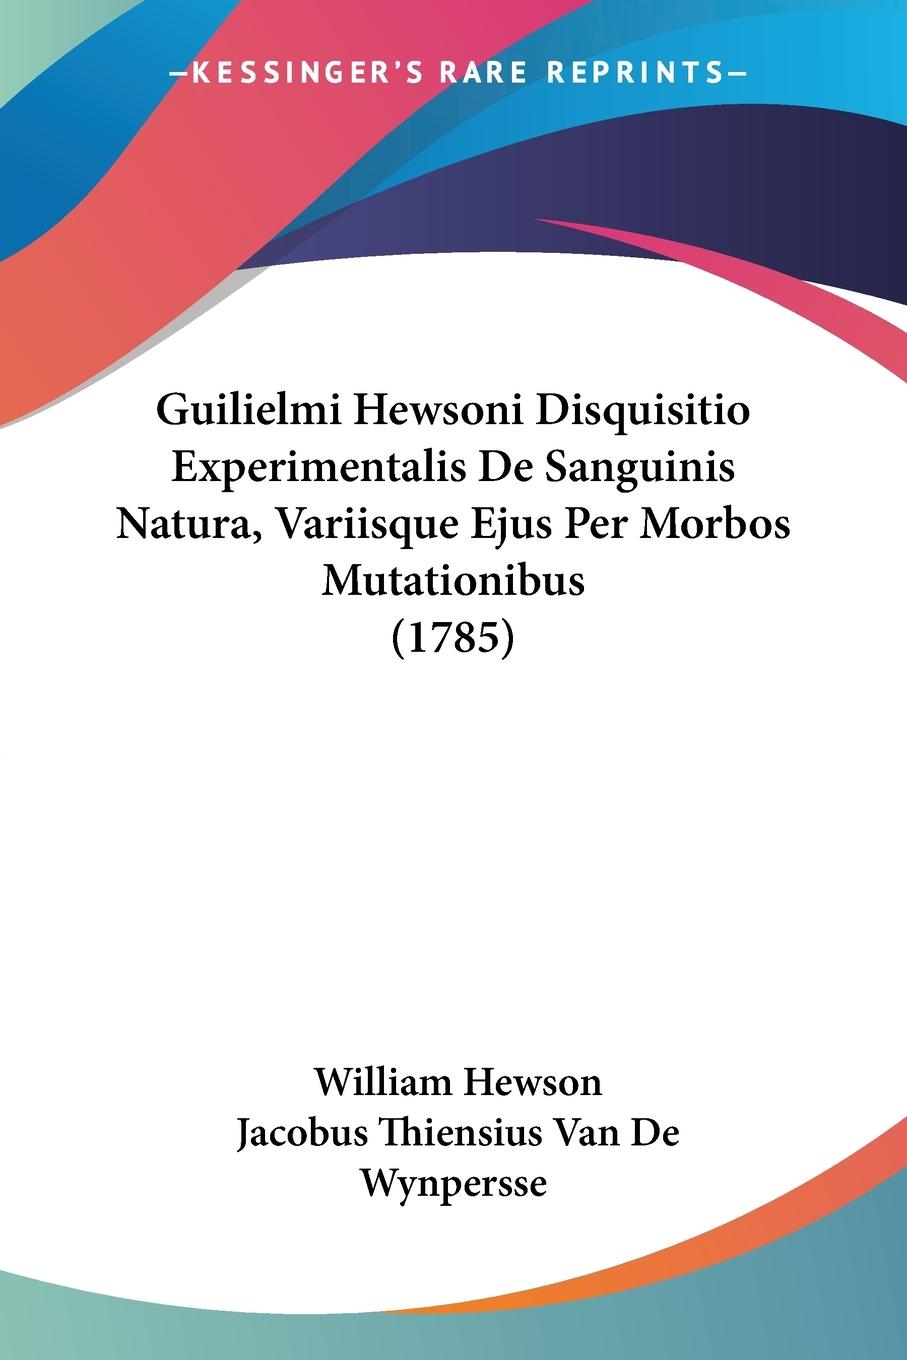 Guilielmi Hewsoni Disquisitio Experimentalis De Sanguinis Natura, Variisque Ejus Per Morbos Mutationibus (1785) - Hewson, William Wynpersse, Jacobus Thiensius Van De